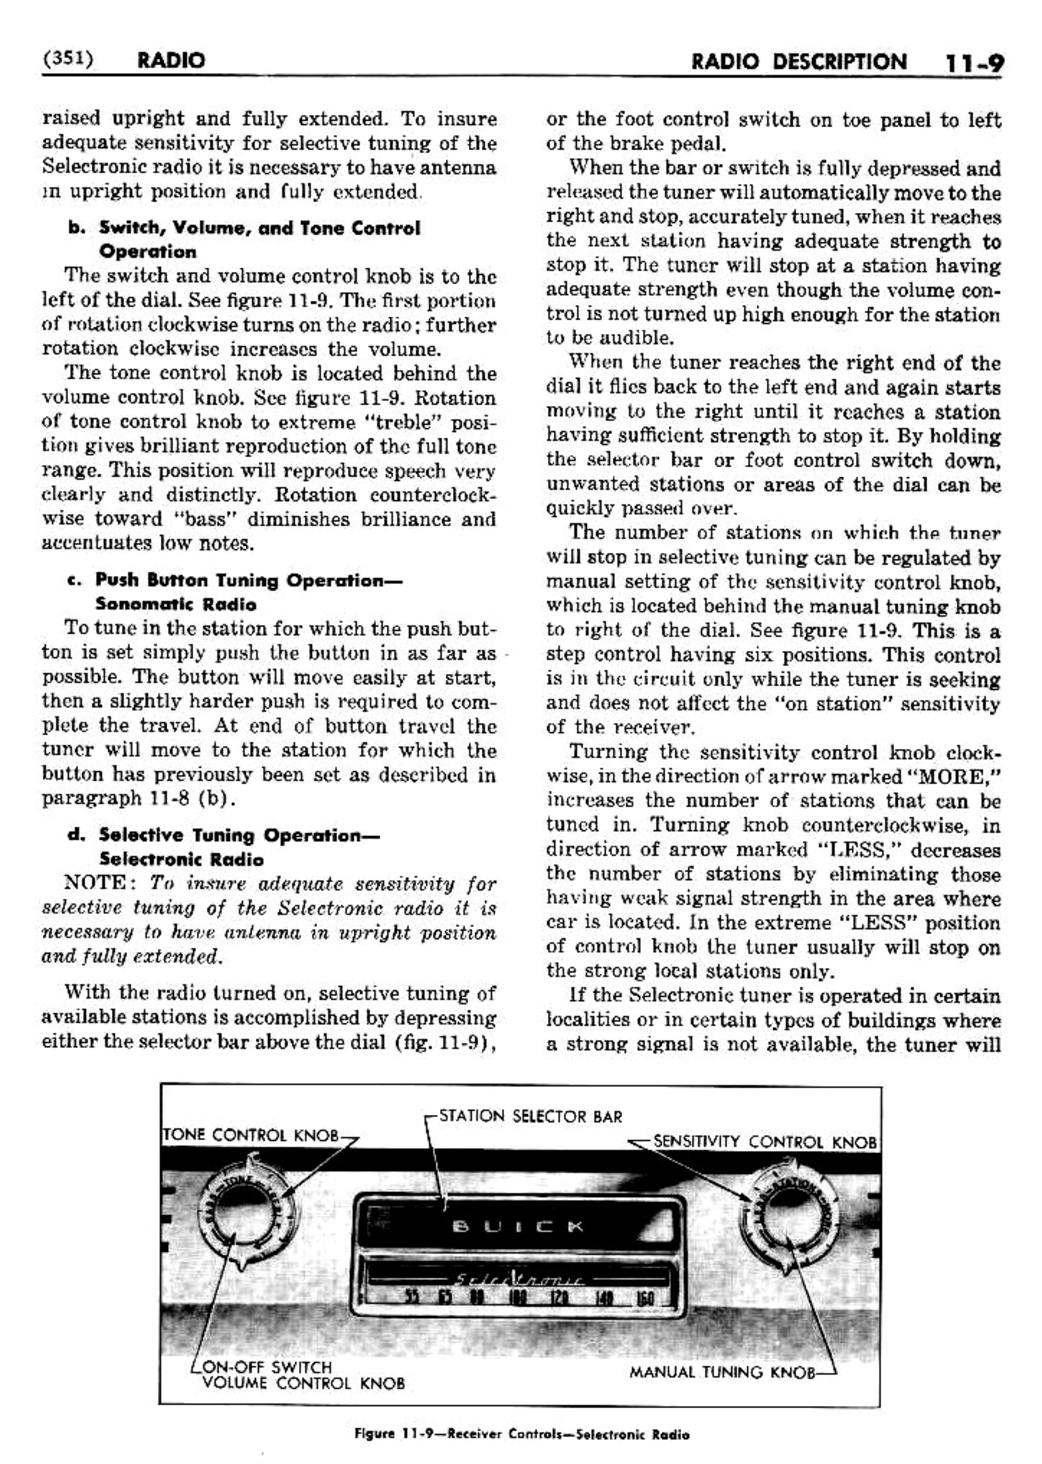 n_12 1950 Buick Shop Manual - Accessories-009-009.jpg